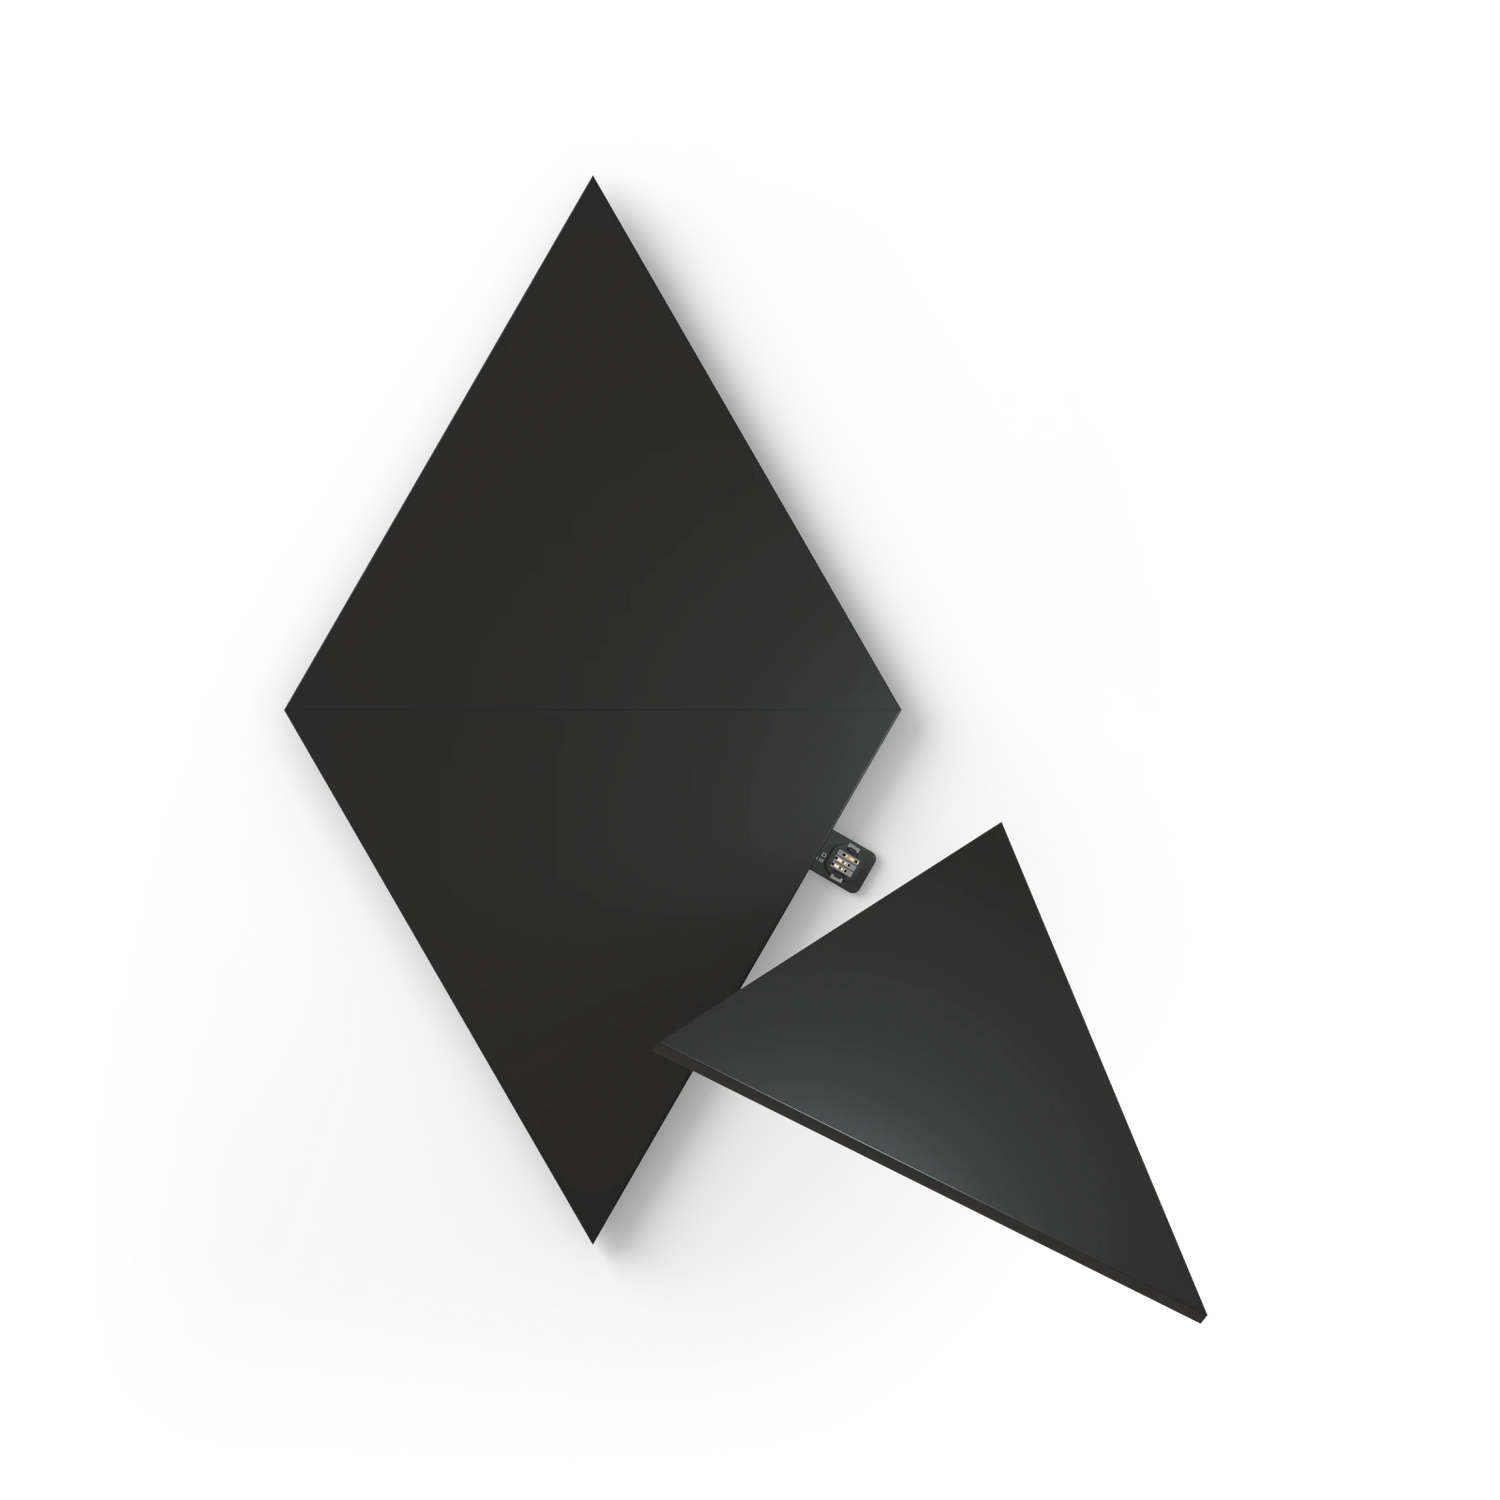 Nanoleaf Shapes Triangles